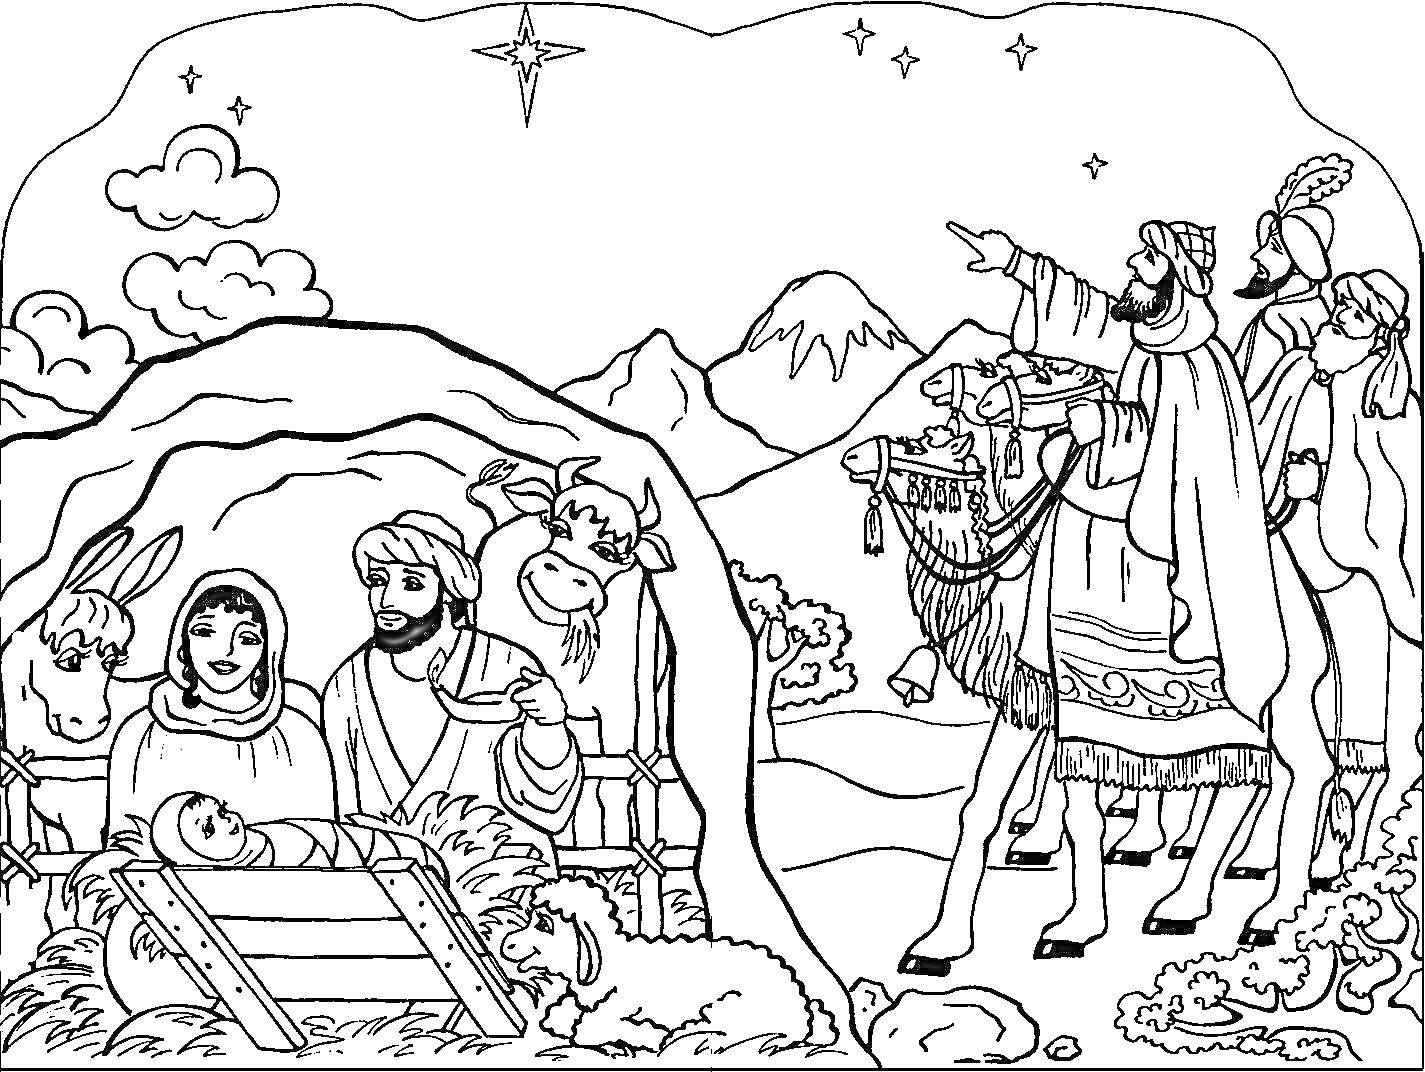 Раскраска Рождественская сцена с младенцем Иисусом, Марией, Иосифом, волхвами, верблюдом, ослом, овцами и звездой над пещерой